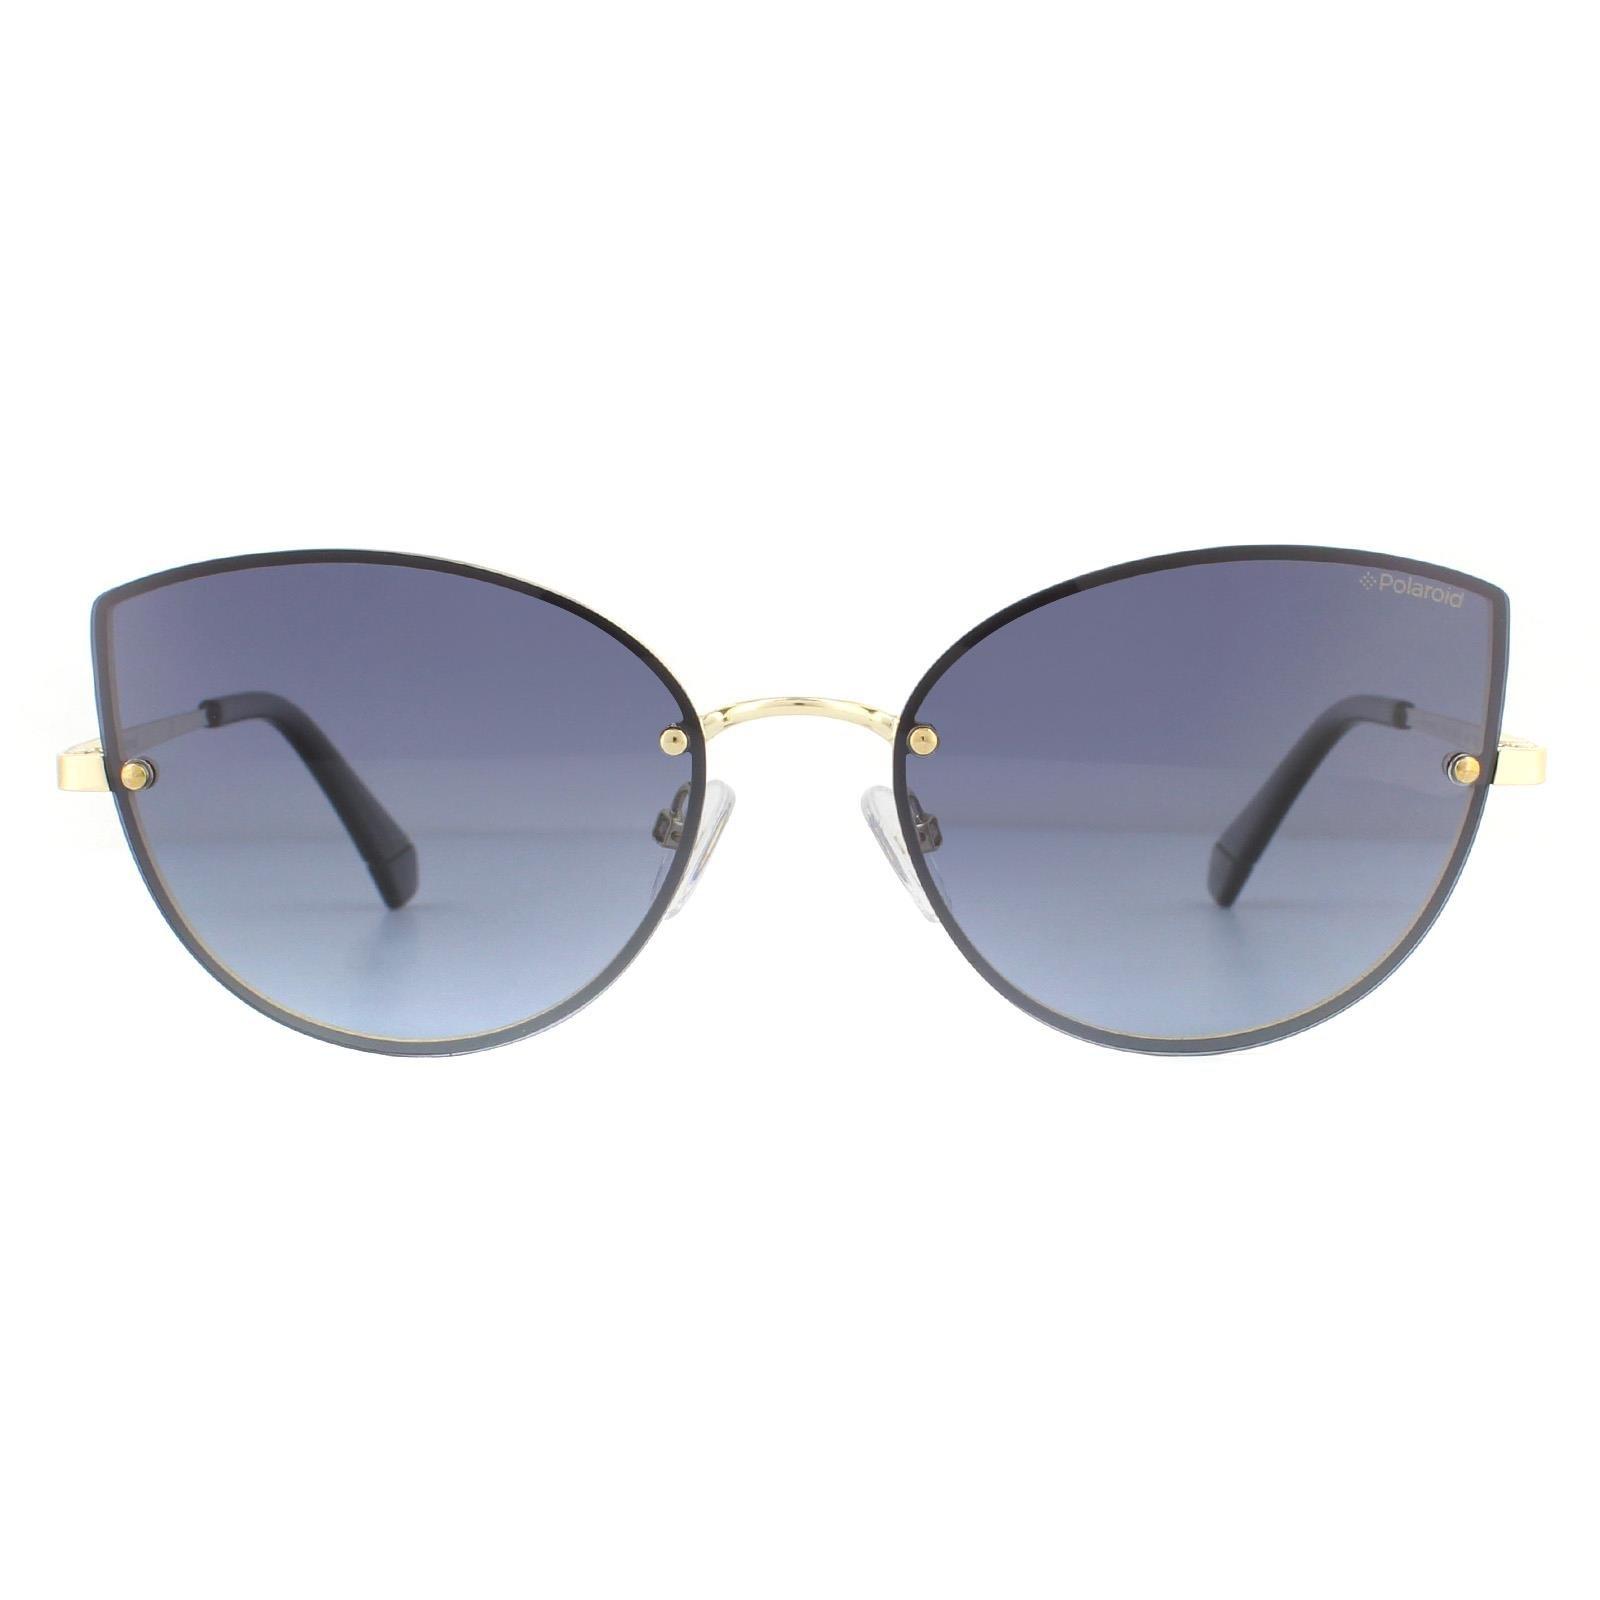 Поляризованные солнцезащитные очки «кошачий глаз» золотисто-серые серые с градиентом Polaroid, золото